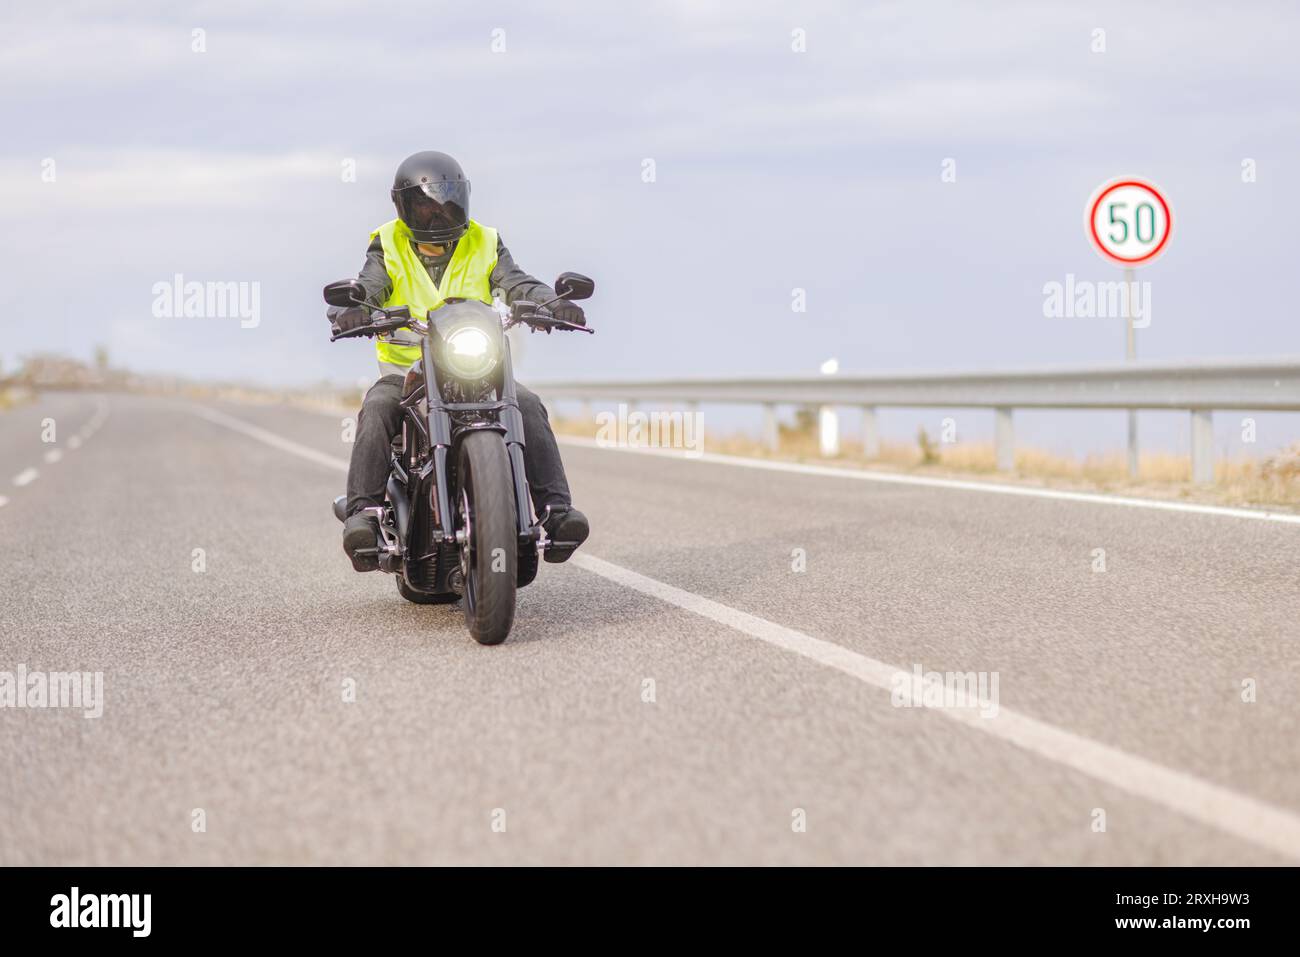 Homme avec un gilet de sécurité réfléchissant conduisant une moto hacheur sur une route ouverte à côté d'un panneau de signalisation de limite de vitesse Banque D'Images